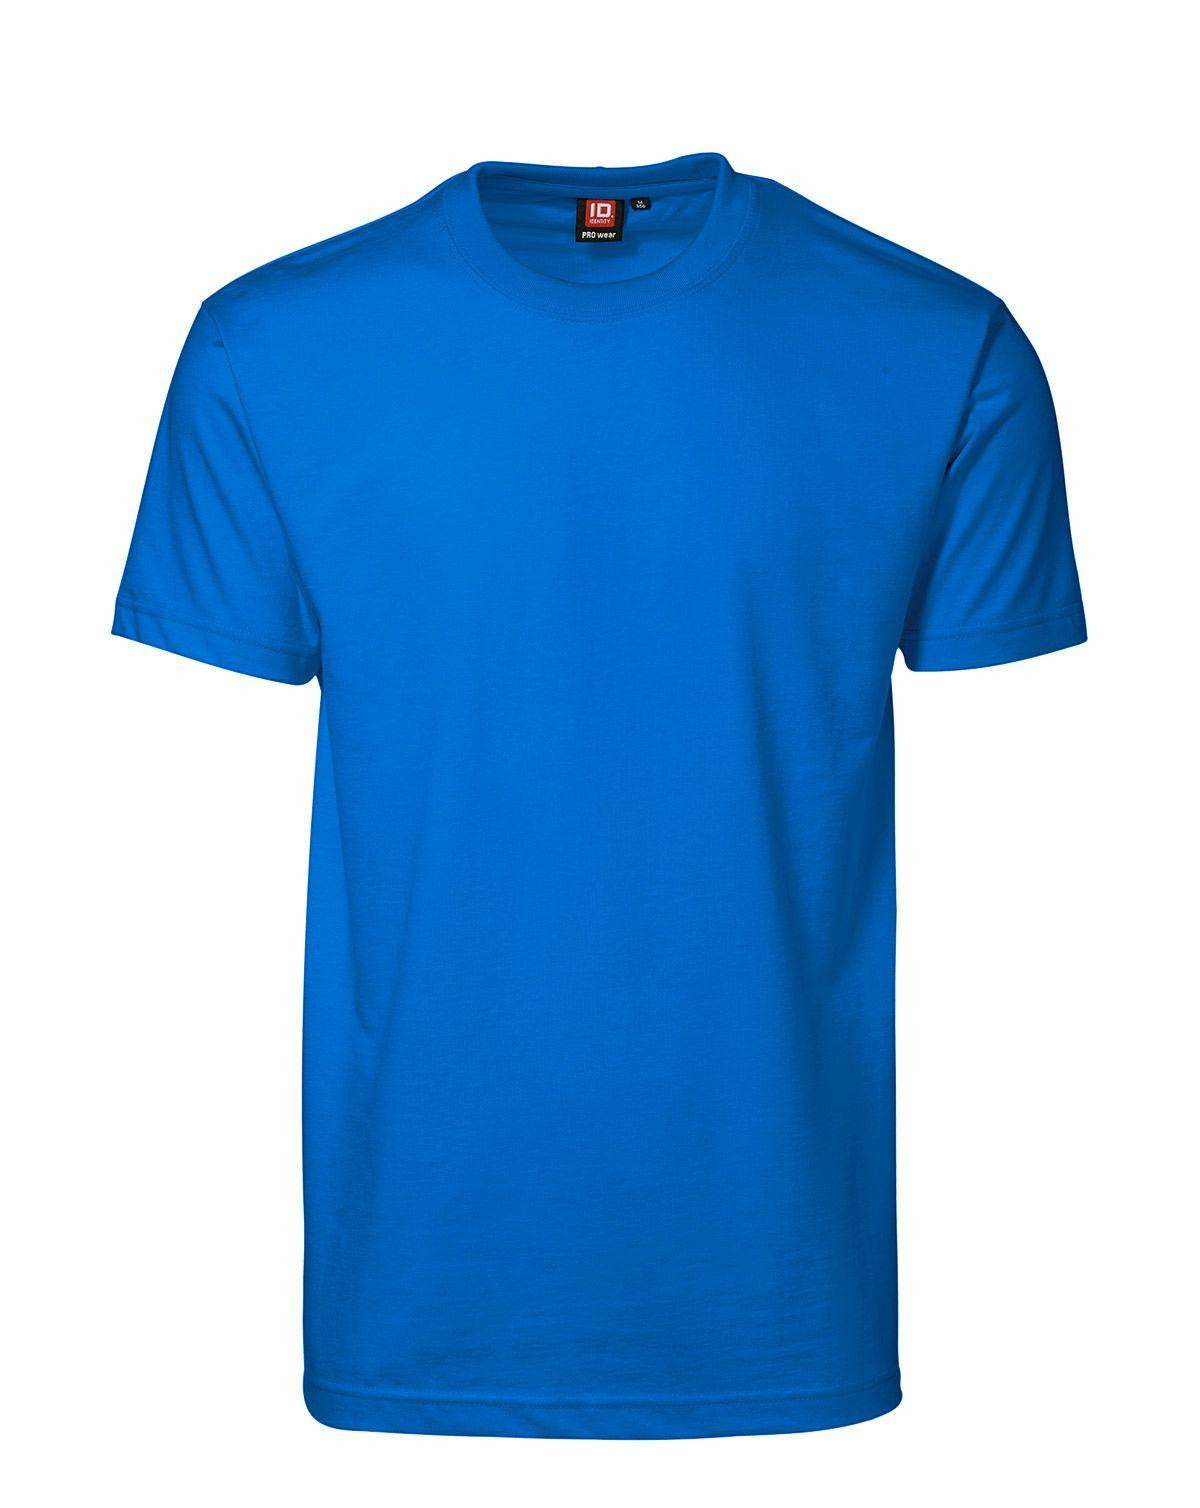 ID PRO Wear T-shirt til Herre (Azure, XL)